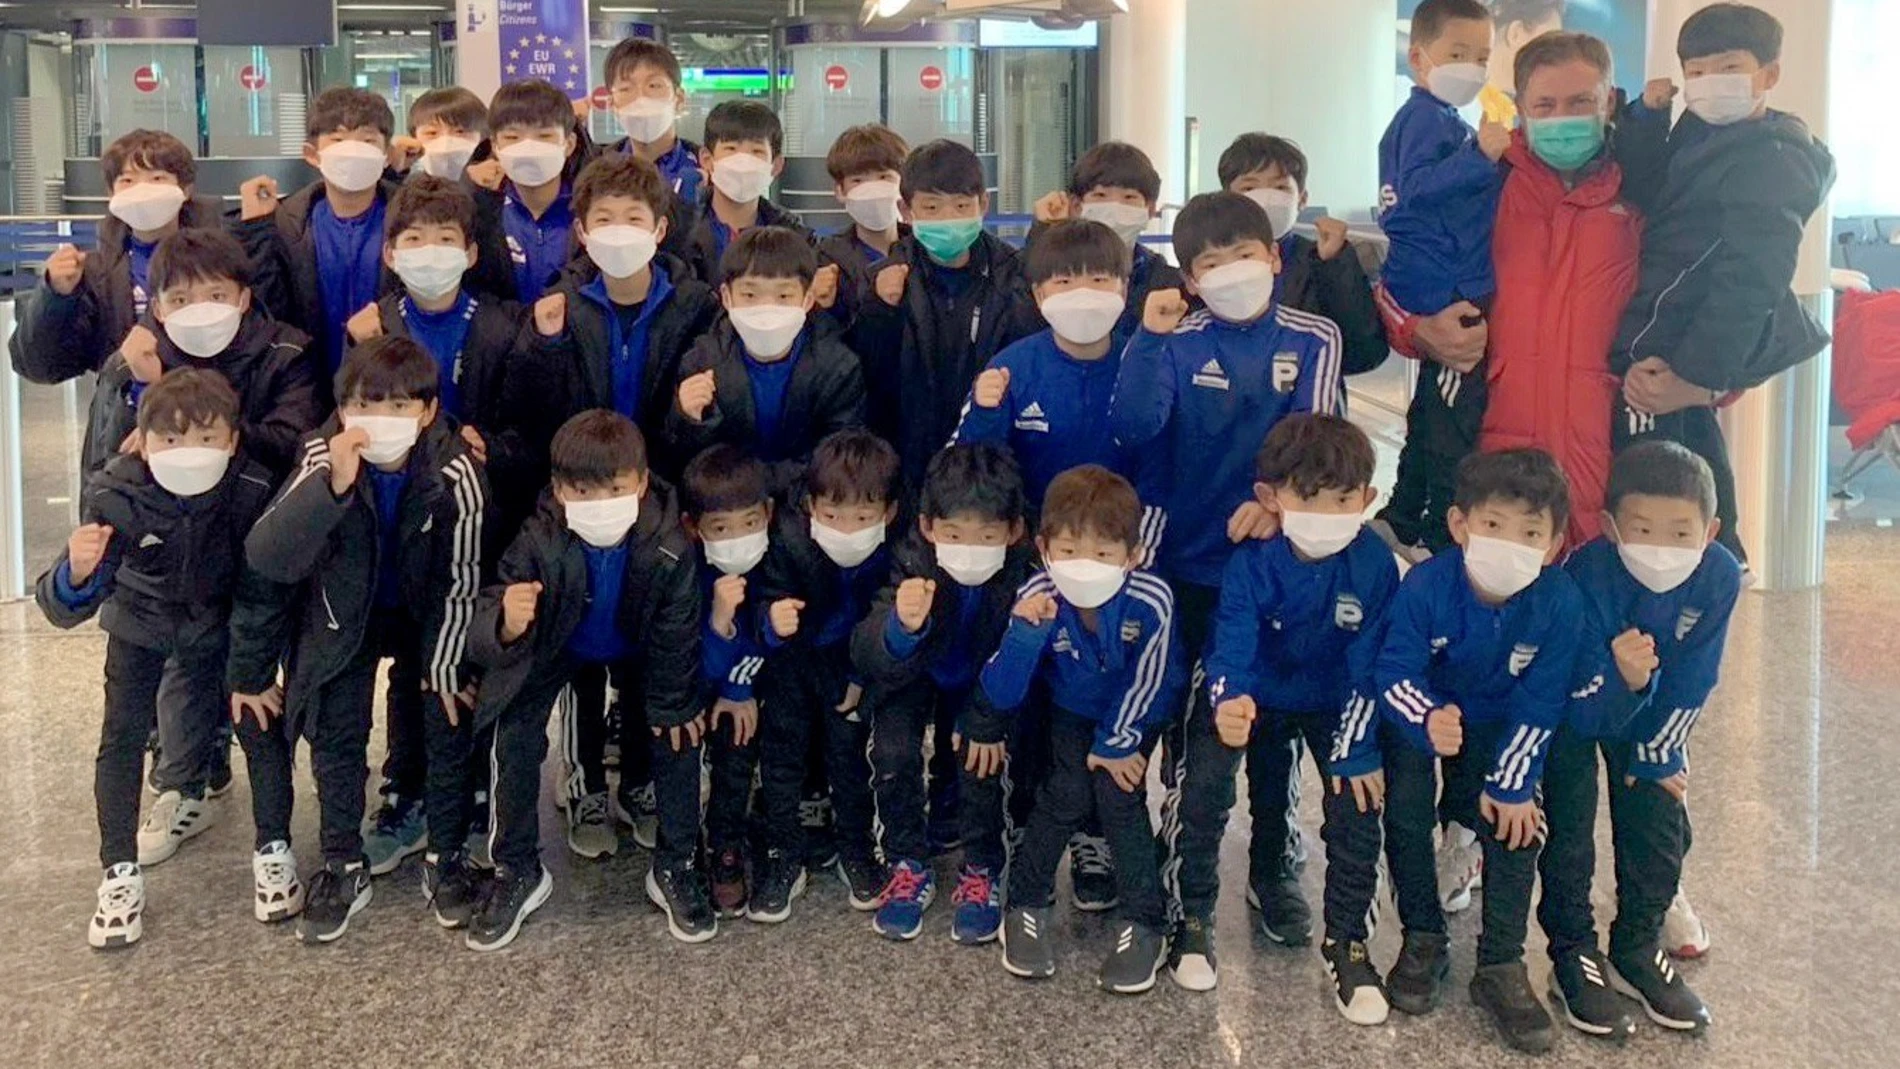 Un entrenador de fútbol en Corea del Sur: "Hay preocupación, pero no miedo"